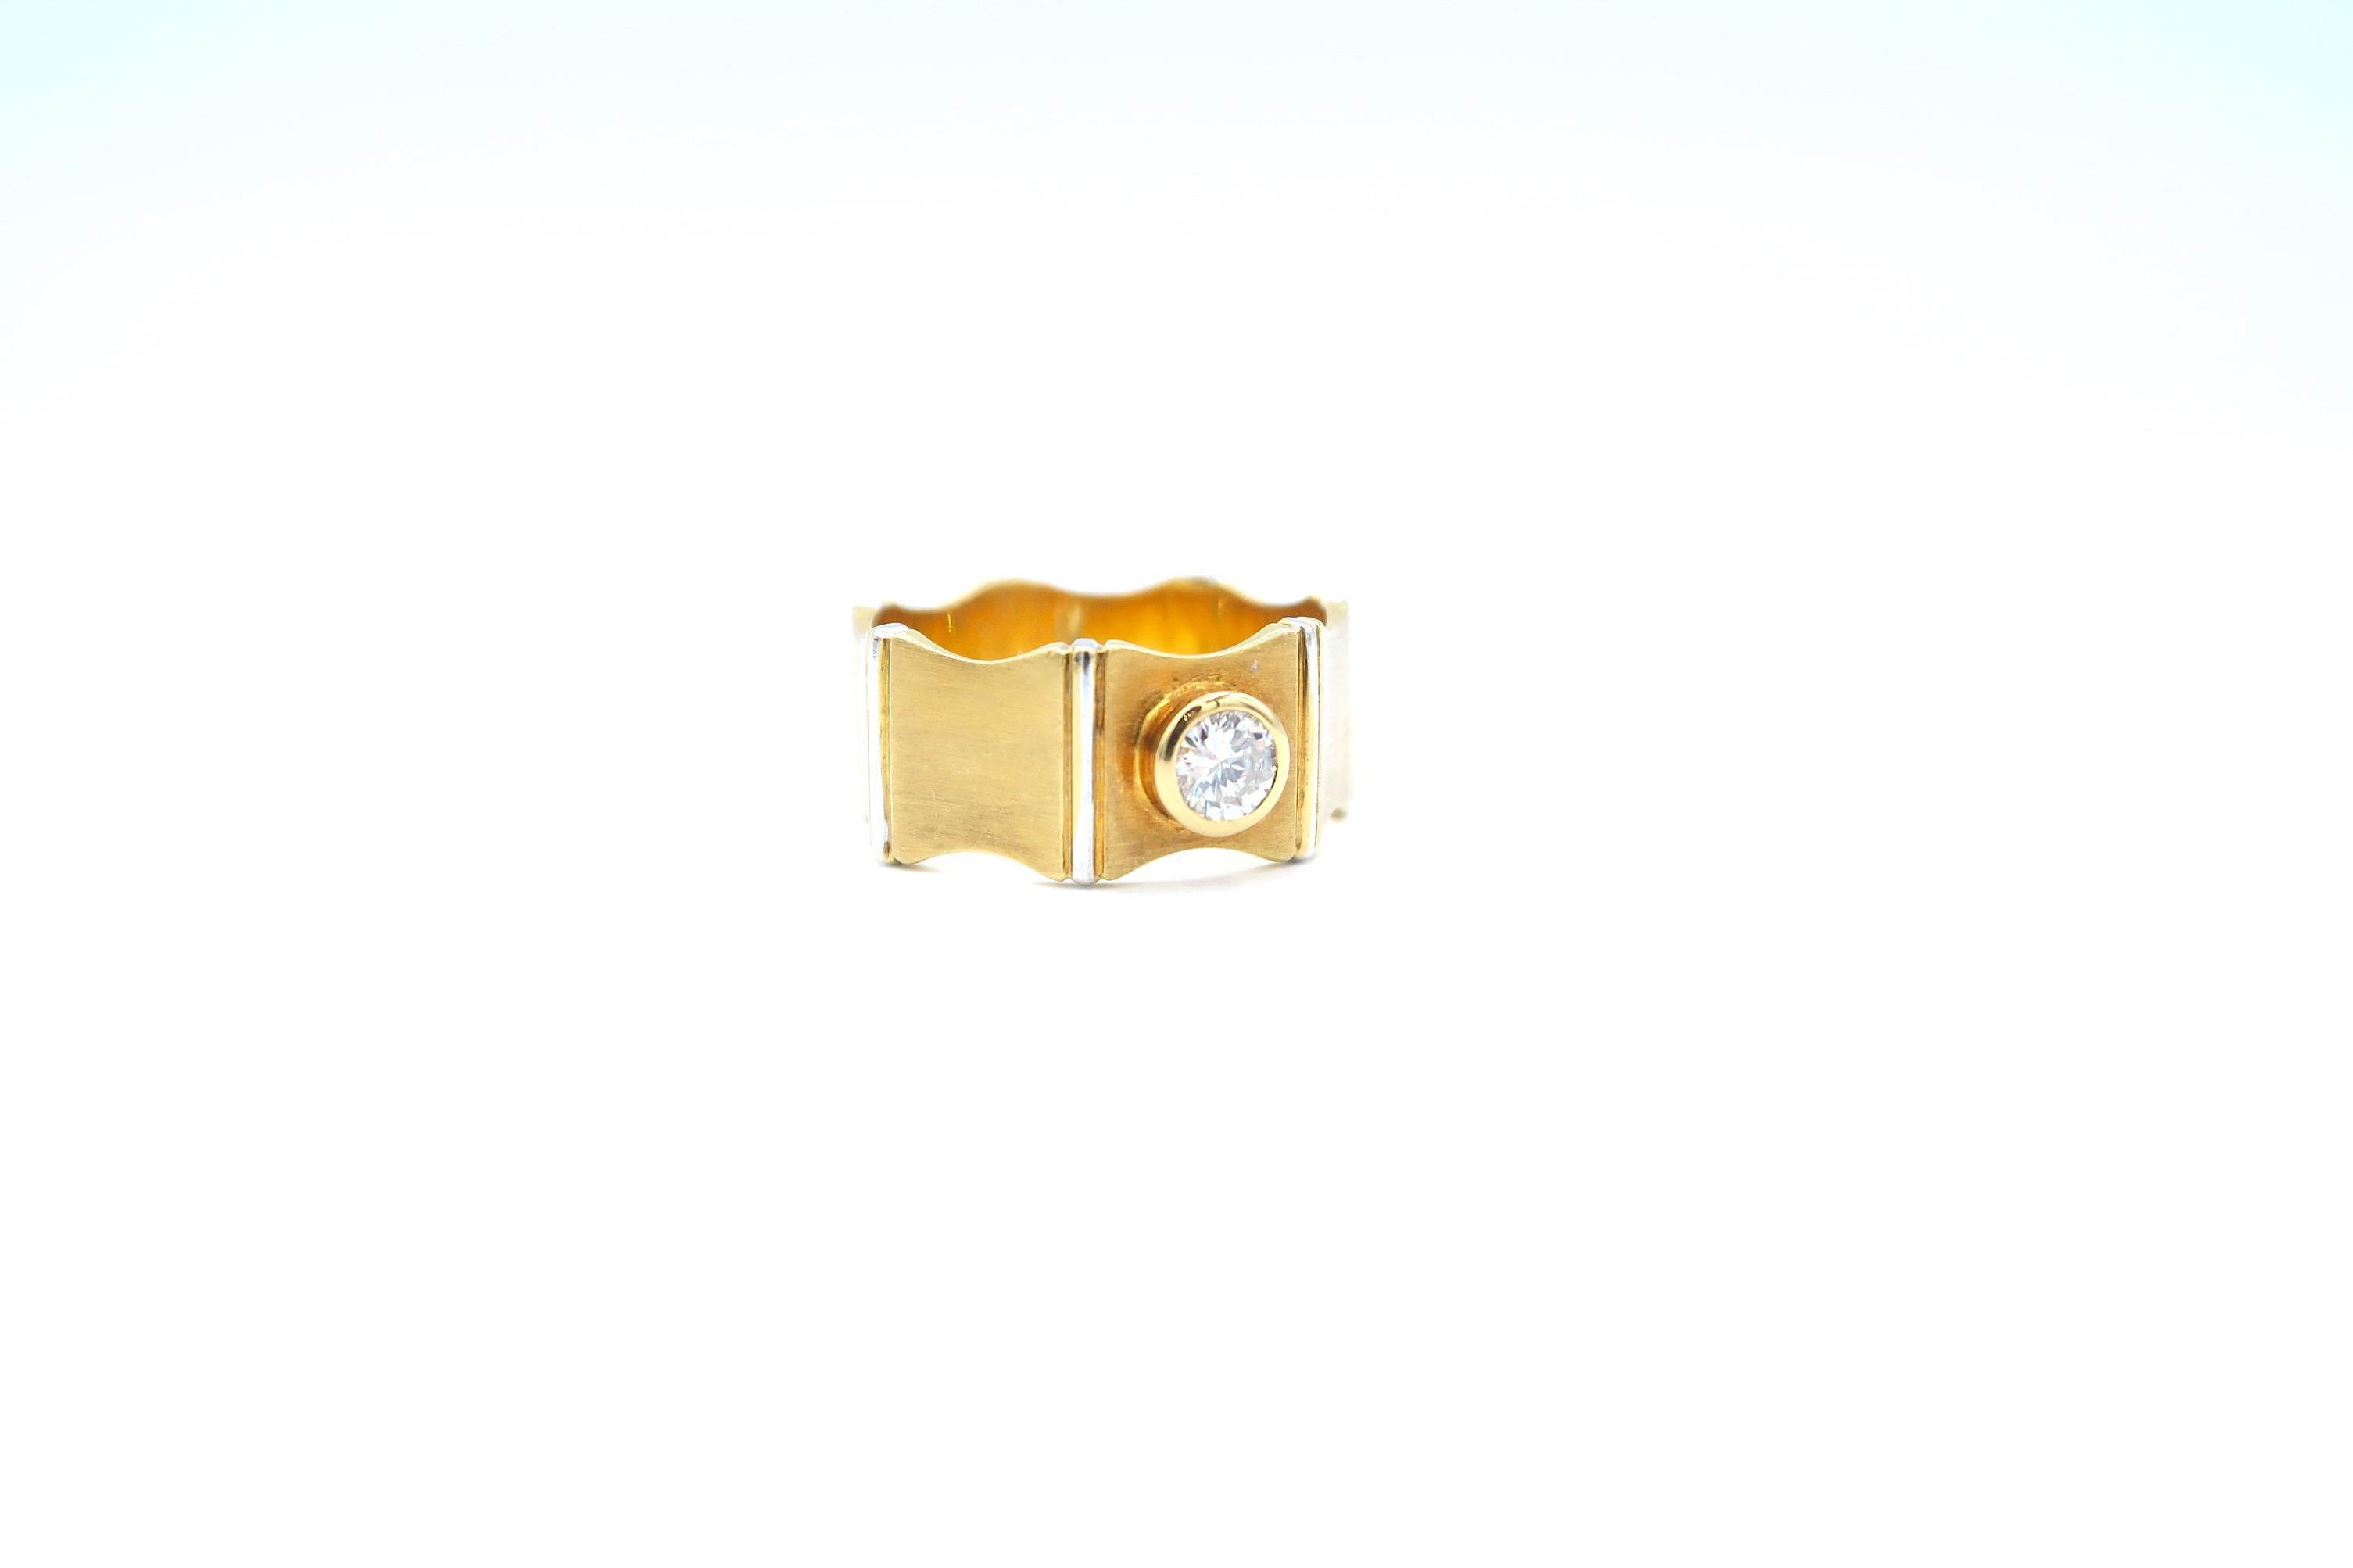 0.35 Carat Diamond 18 Karat Gold Band Ring with 18 Karat White Gold Vertical Edges

Ring size: 56 / UK O / US 7.5

Diamond: 0.35ct.
Gold: 18K 8.09g.